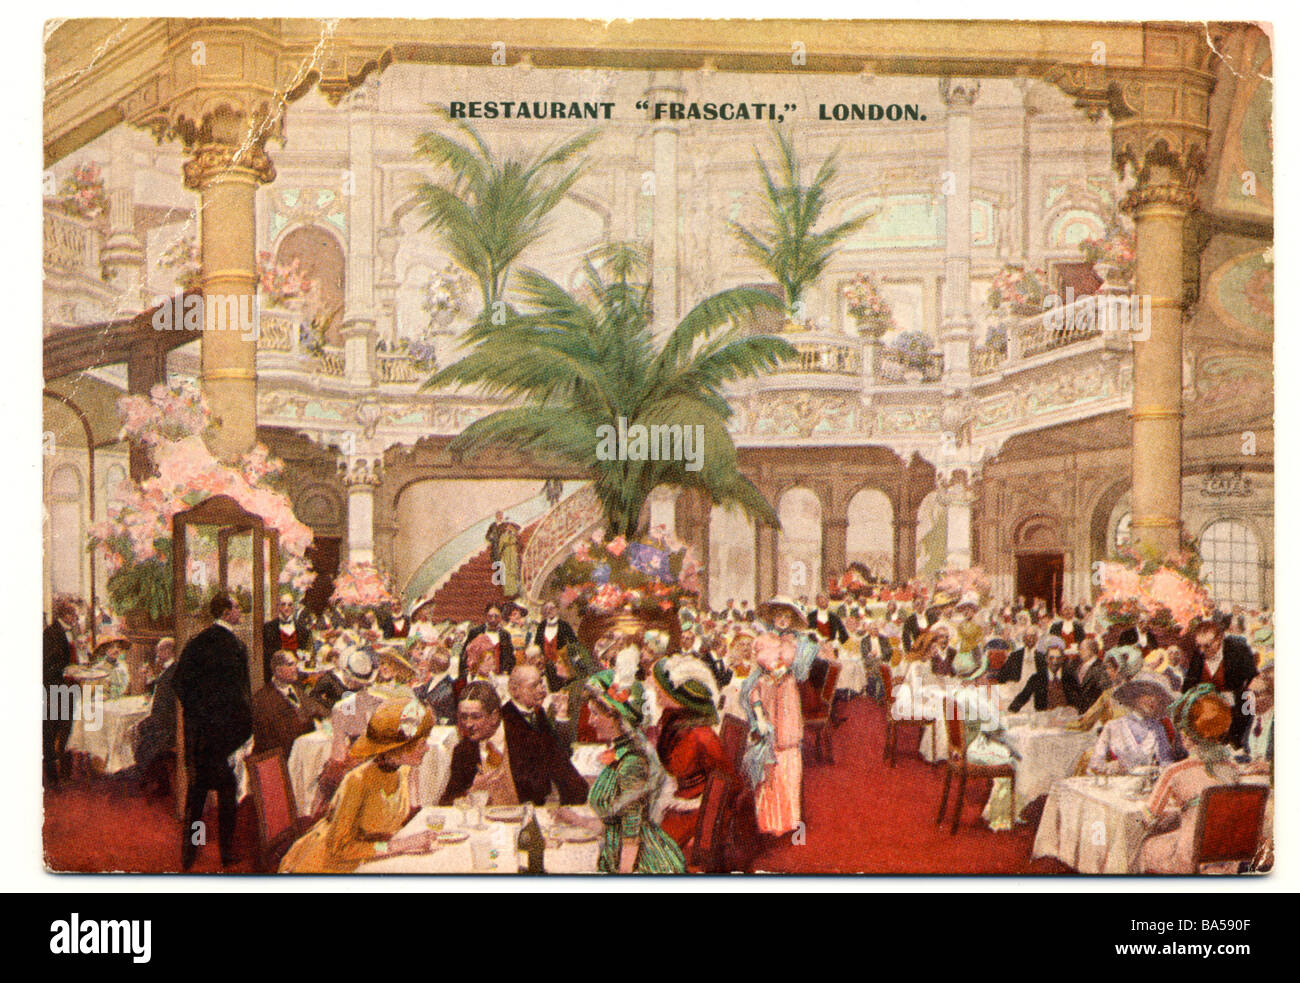 Ancienne carte postale de l'époque victorienne peinte à la main de Frascati Restaurant à Londres en 1895 Banque D'Images